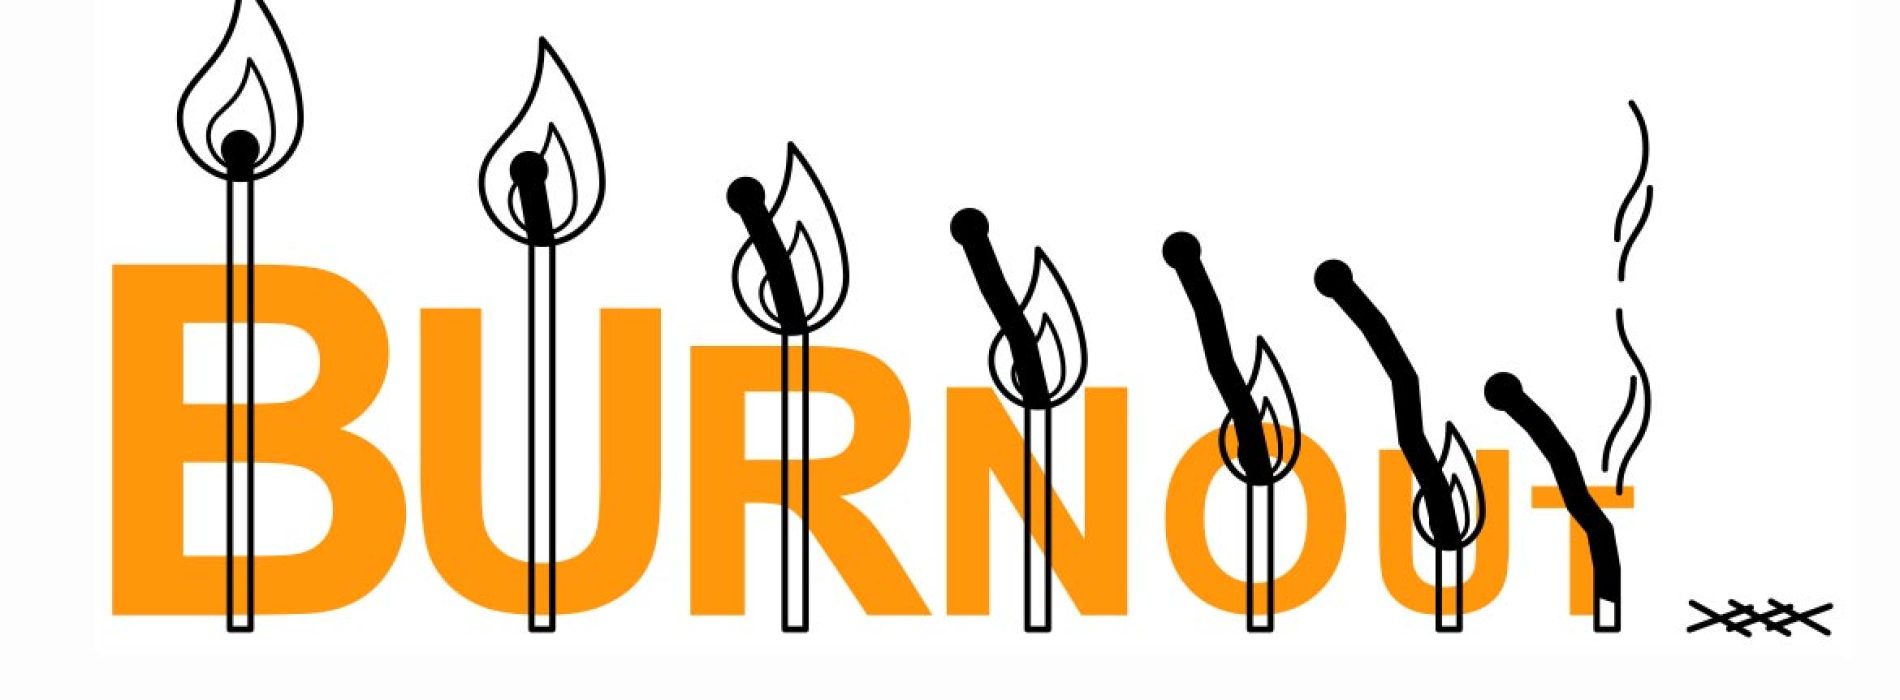 Sindrome da Burnout, quando il lavoro “brucia”: cos’è e come evitarla